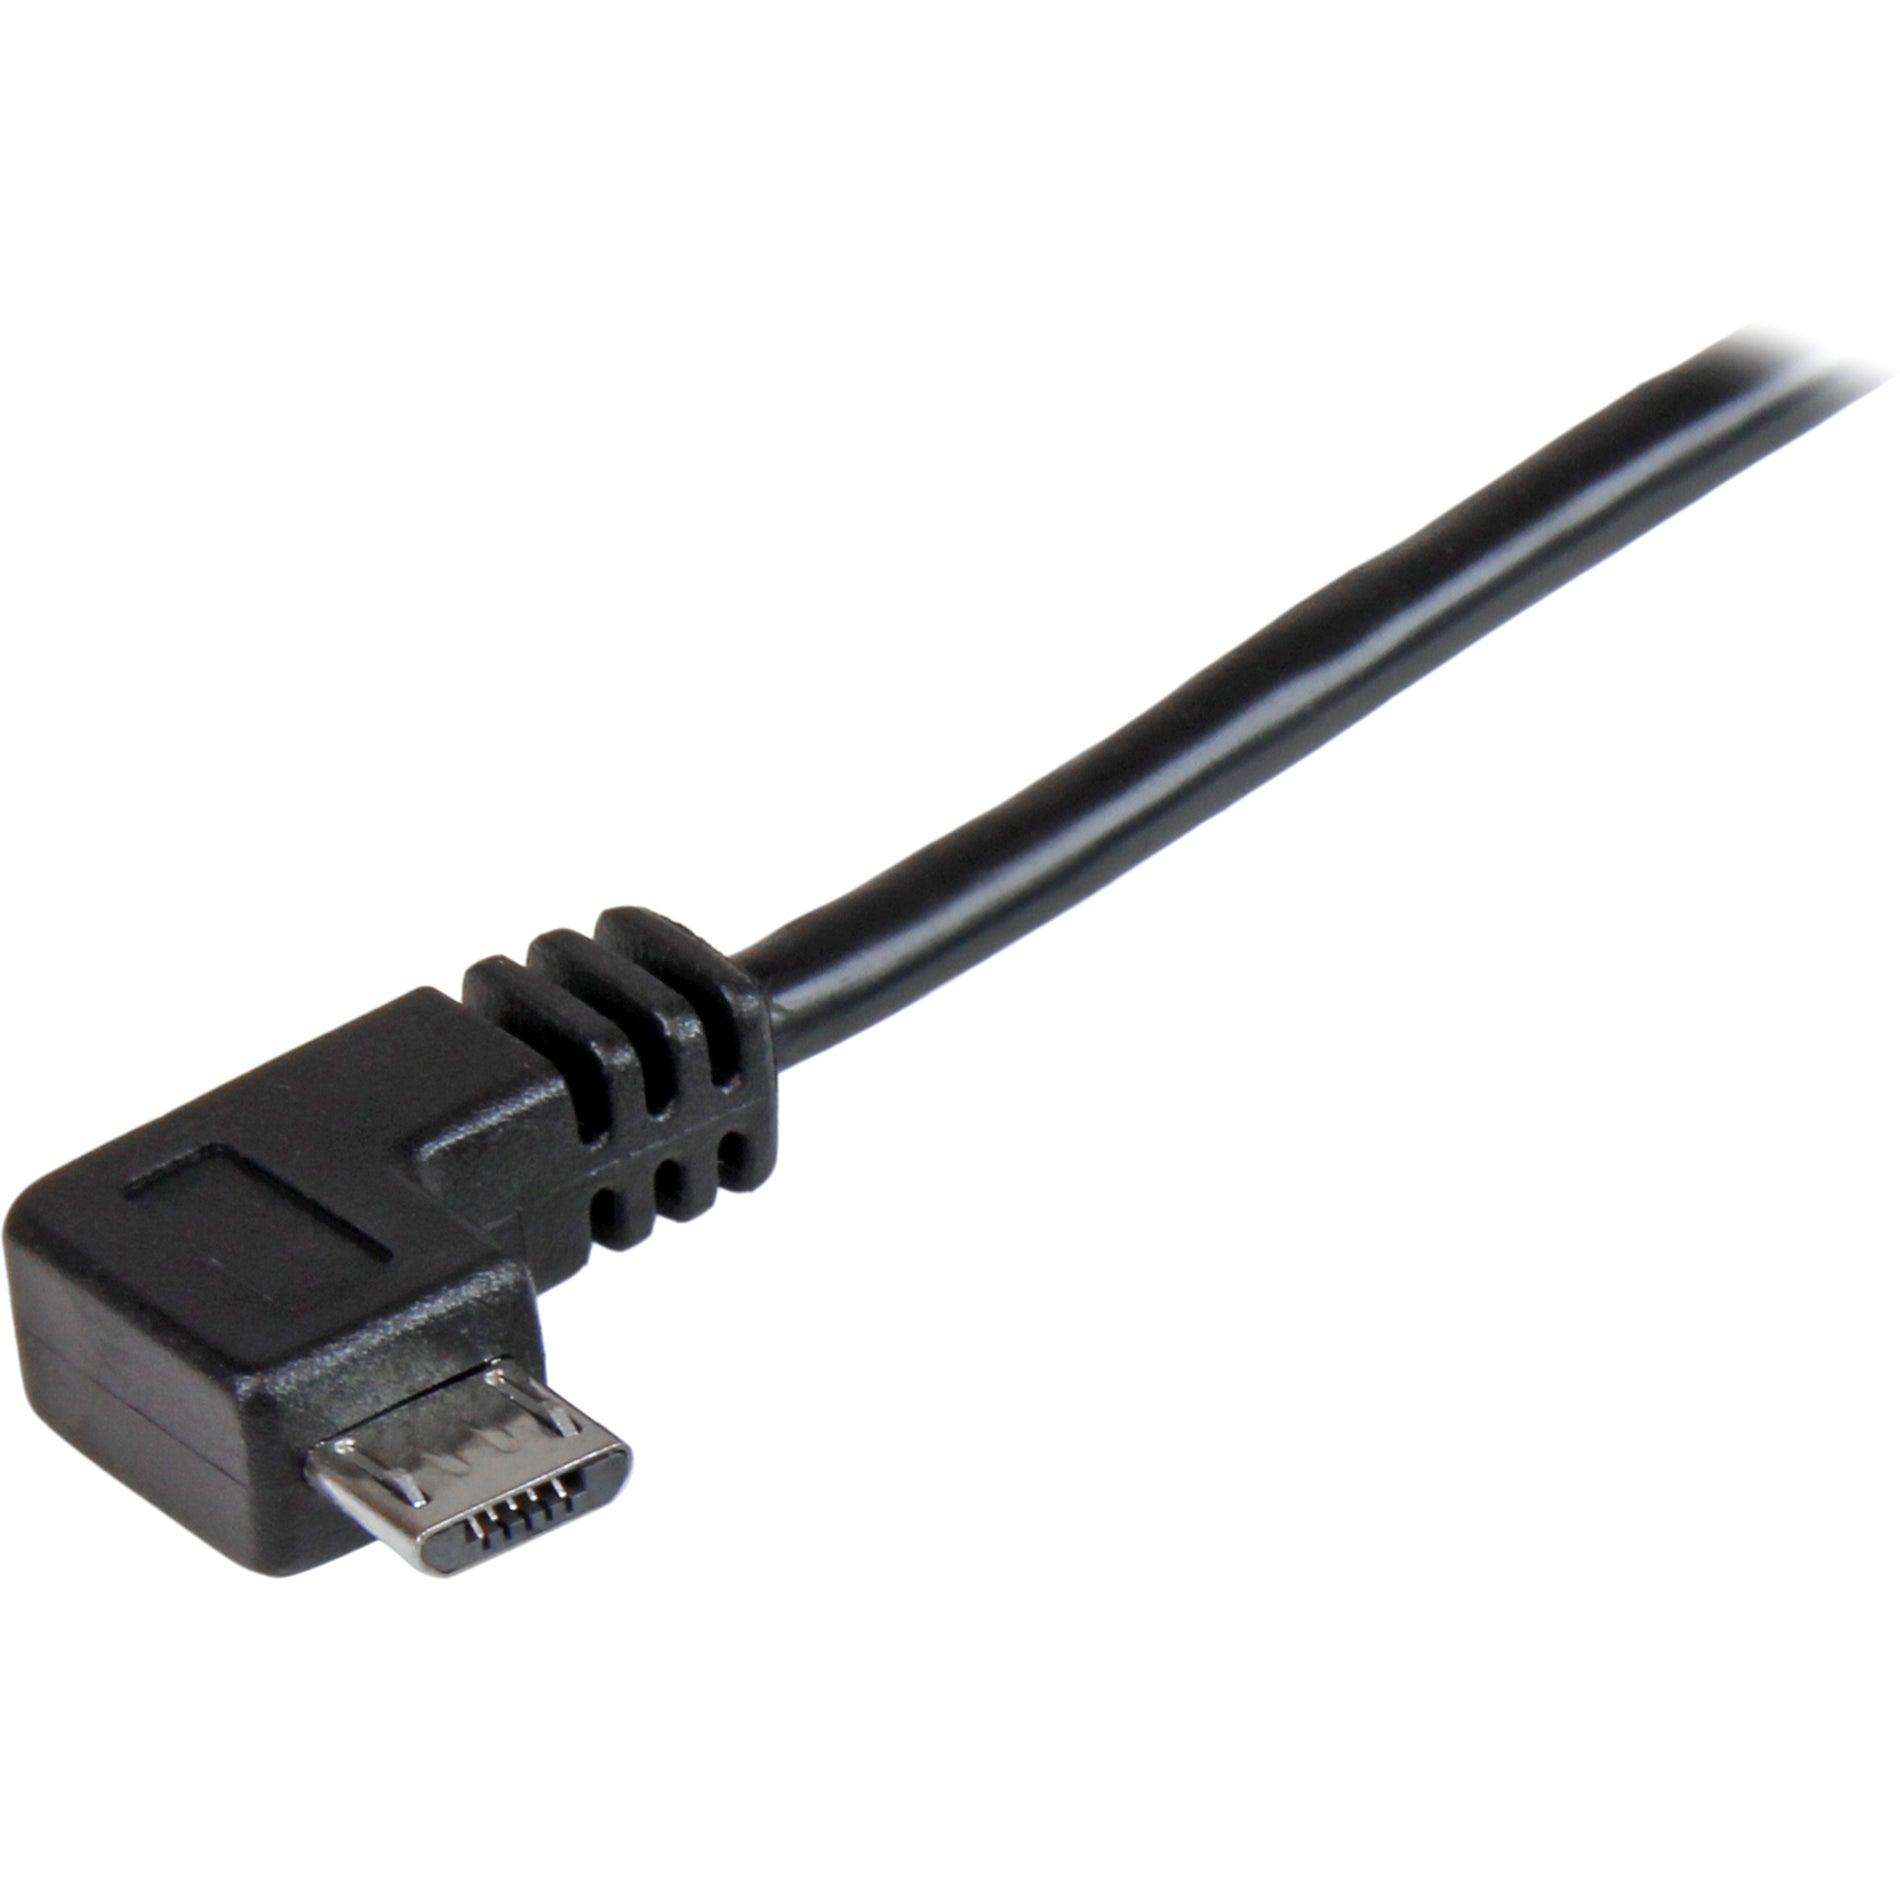 ستارتيك.كوم USBAUB2MRA كابل شحن ومزامنة مايكرو-USB ذكر إلى ذكر - زاوية اليمين مايكرو-USB - 2 م (6 قدم) ، USB 2.0 A إلى مايكرو USB